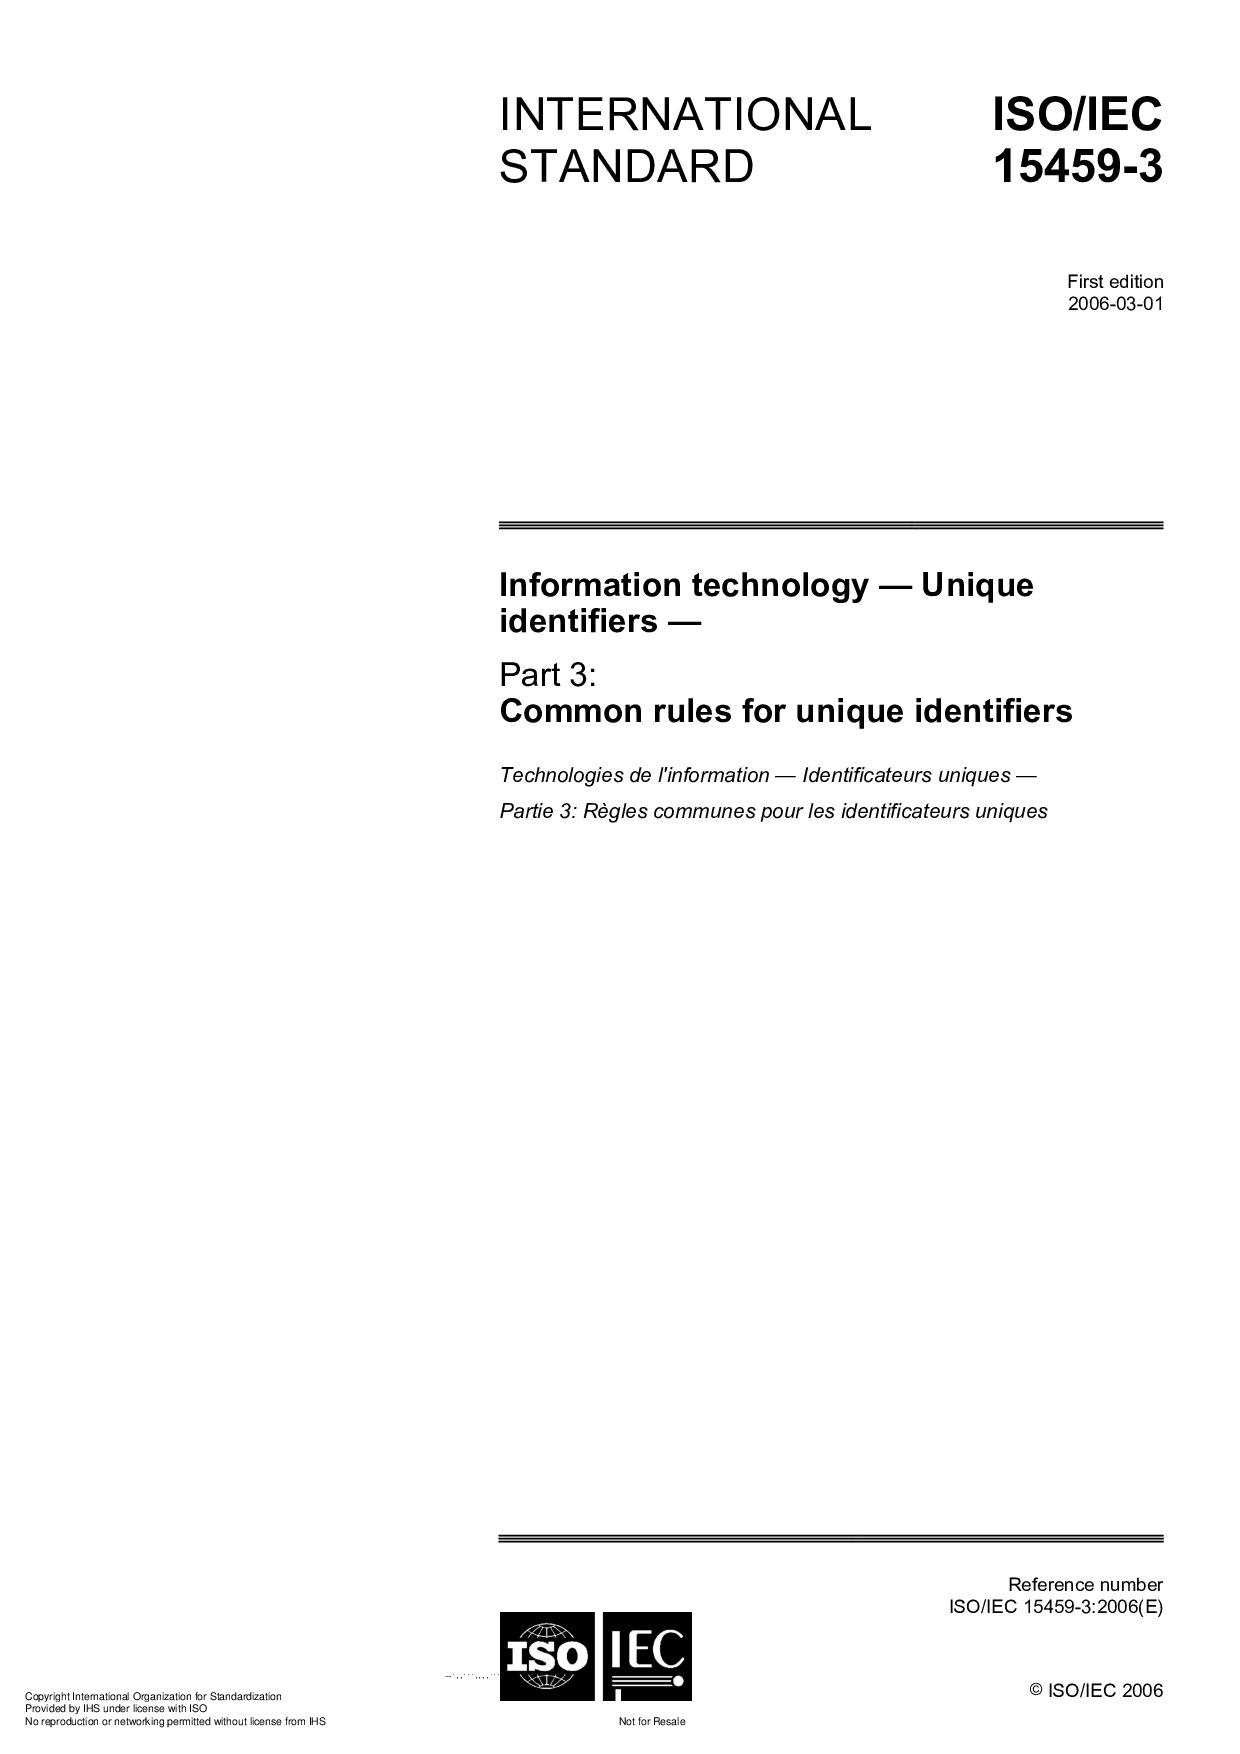 ISO/IEC 15459-3:2006封面图